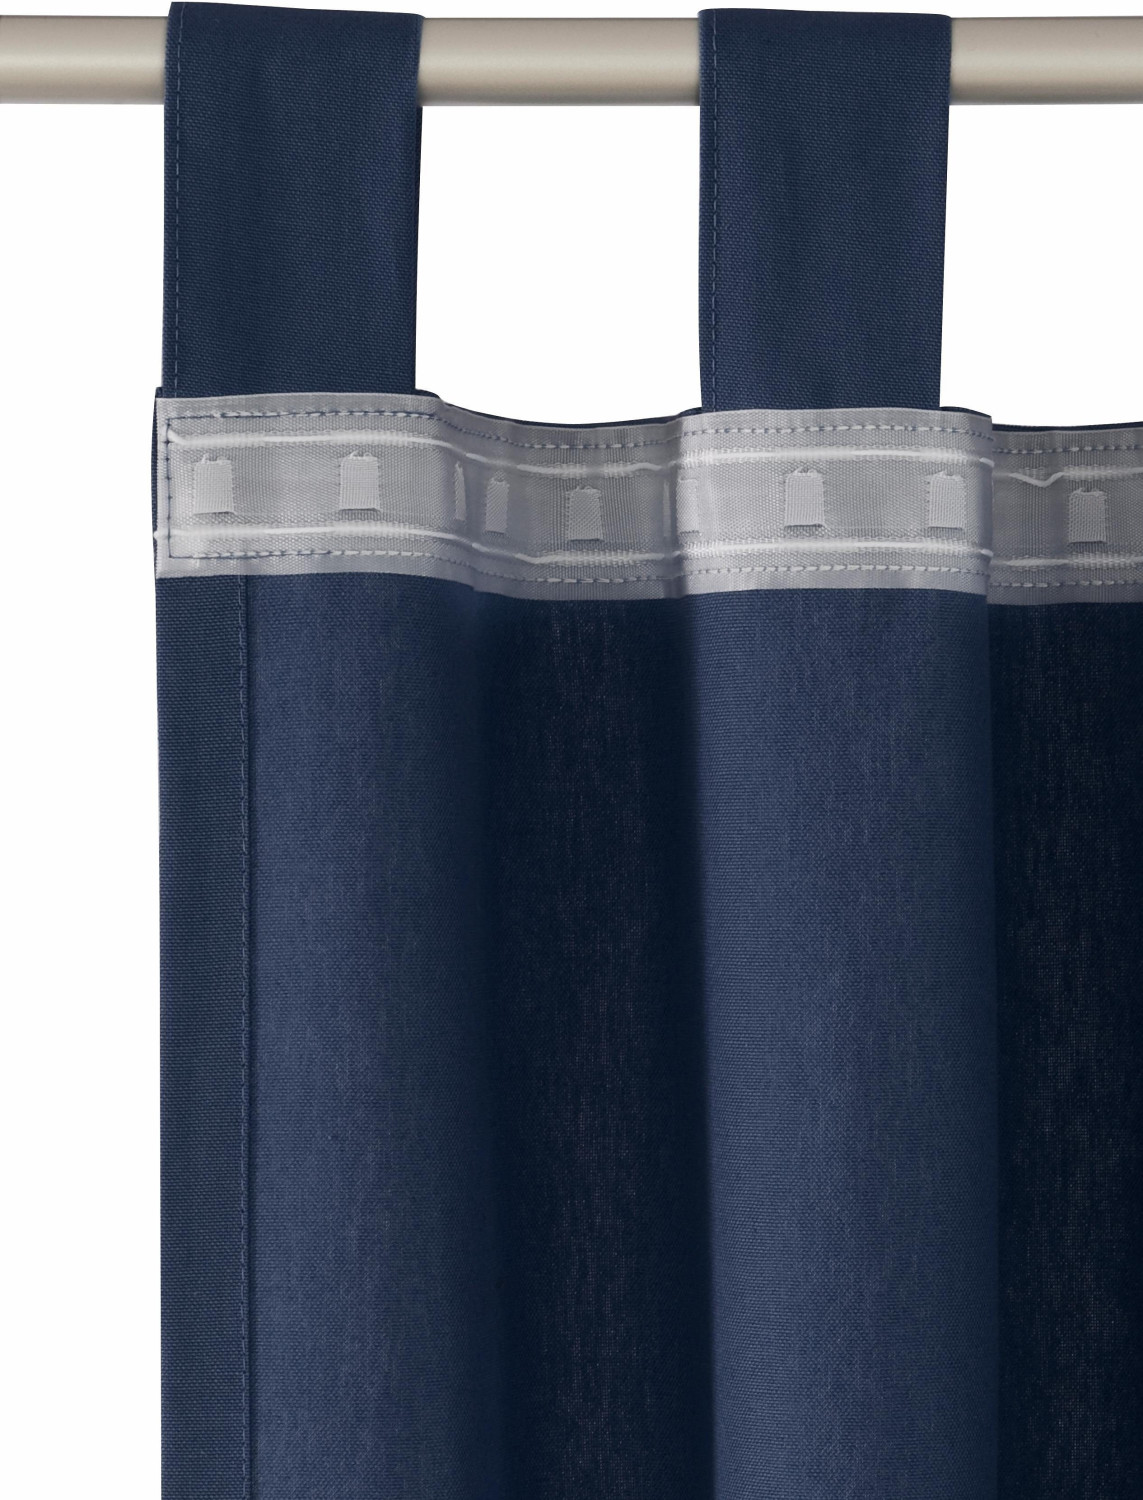 41,97 Tom Vorhang ab Schlaufen dunkelblau | Preisvergleich bei mit Tailor 250x140cm T-Dove €